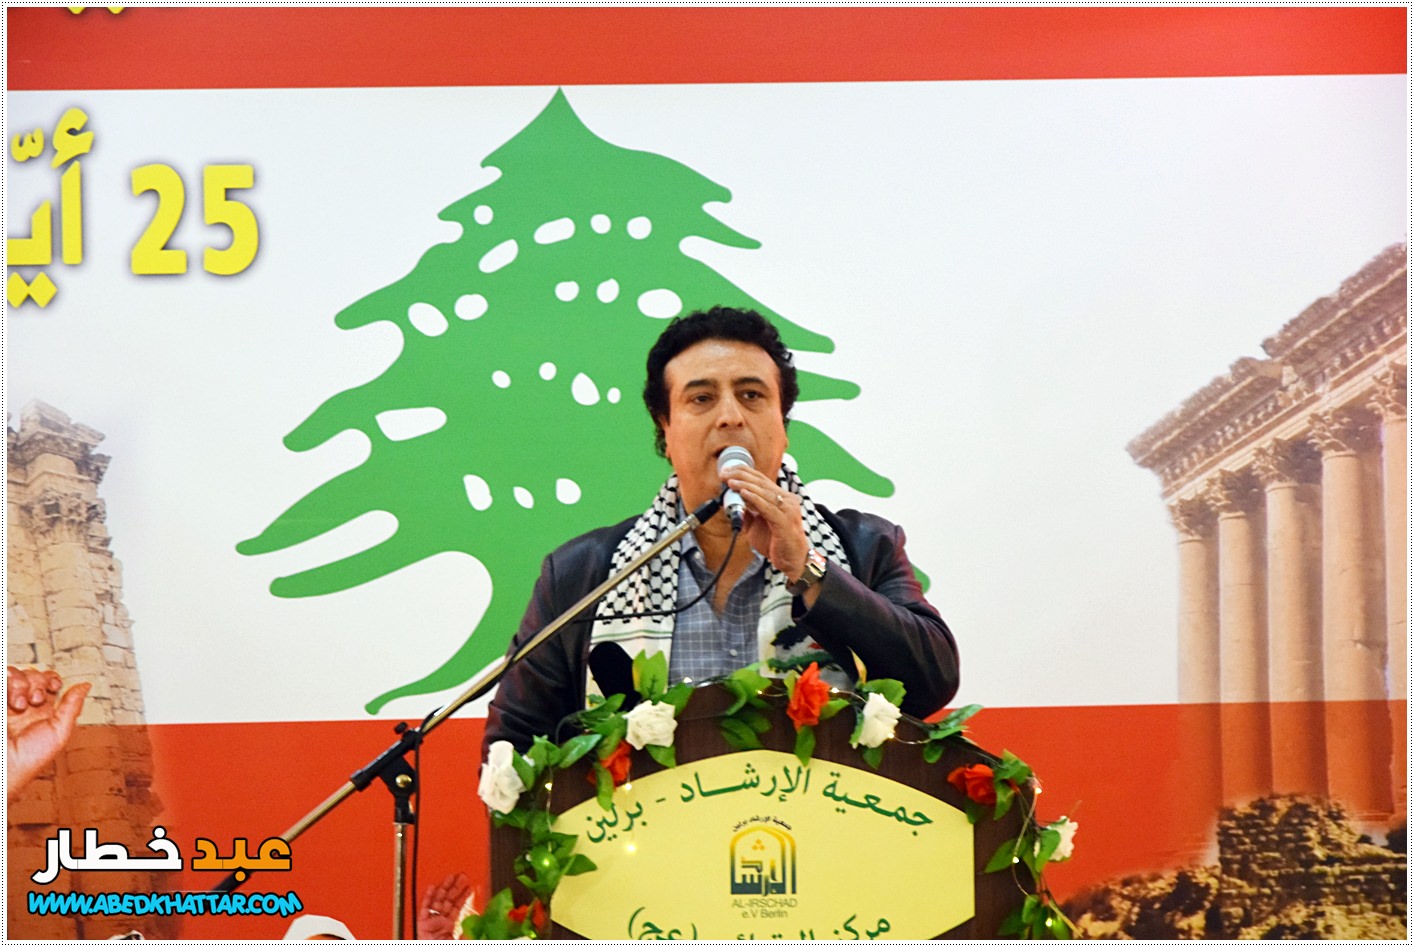 المطرب الفلسطيني محمود ابو خليل